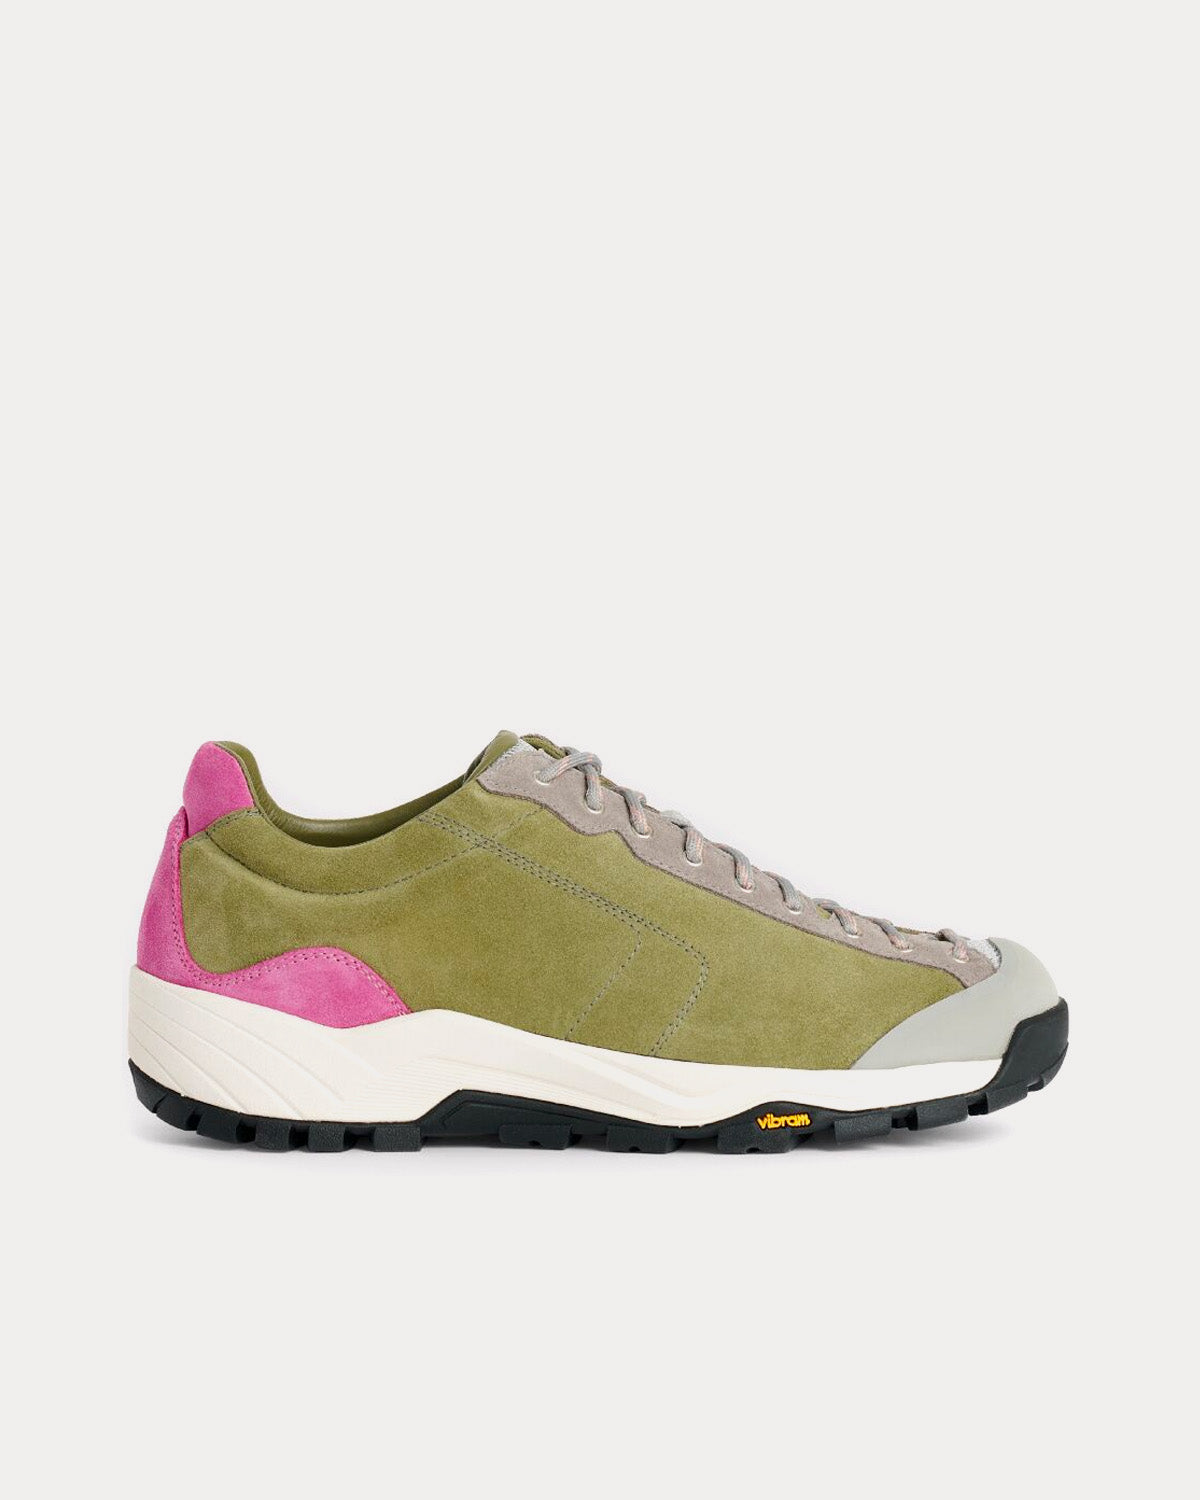 Diemme x Très Bien - Movida Suede Hiker Olive Low Top Sneakers